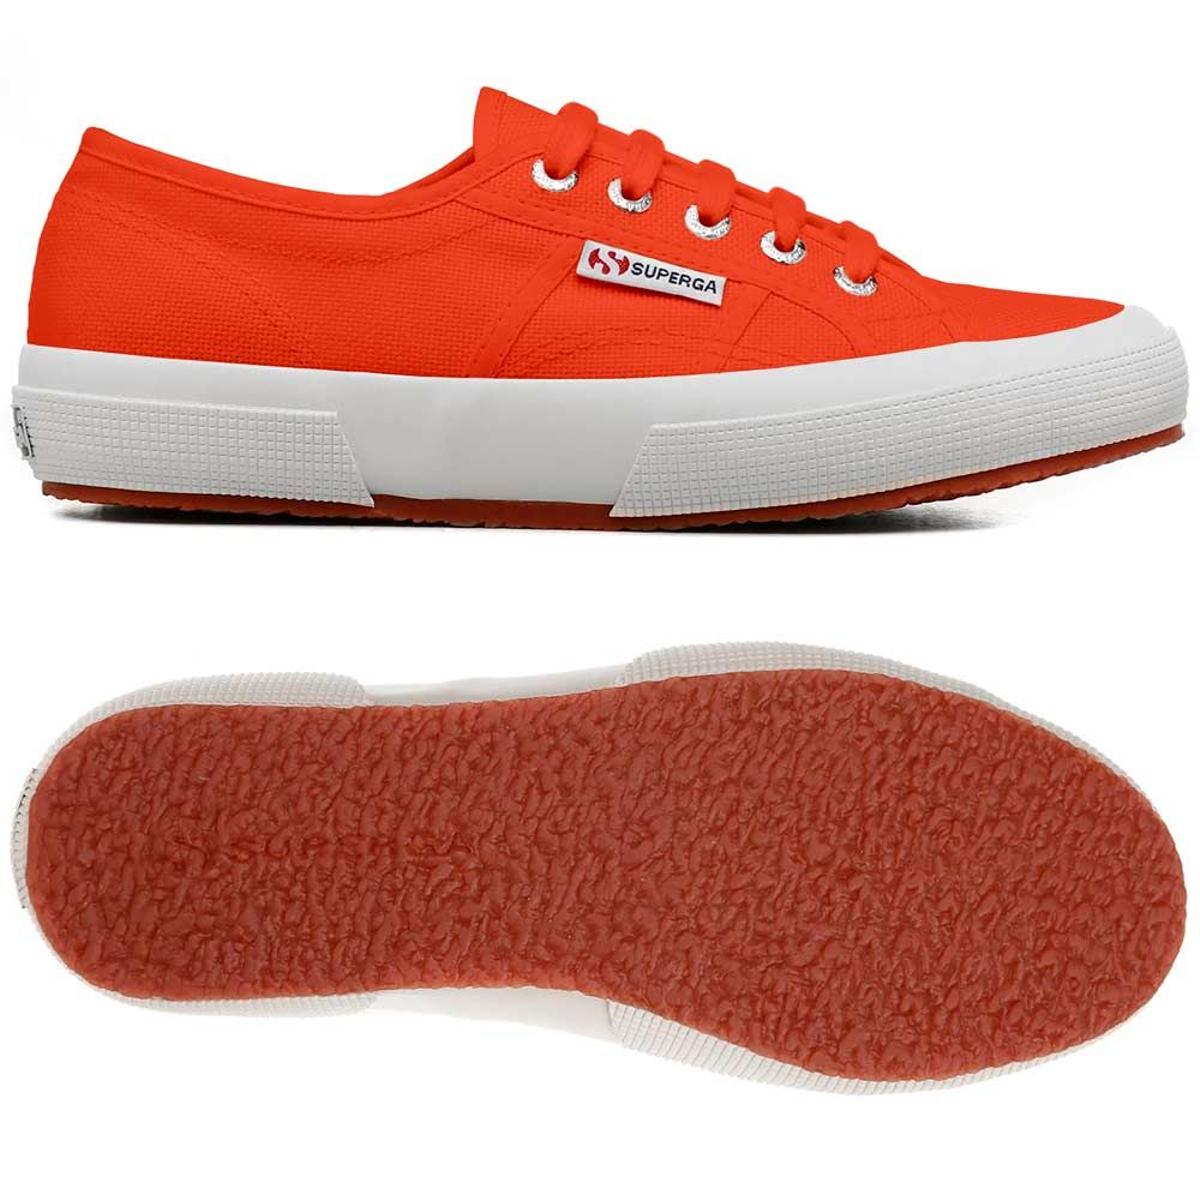 Zapatillas de lona de Superga en color naranja. (Precio: 48 euros)